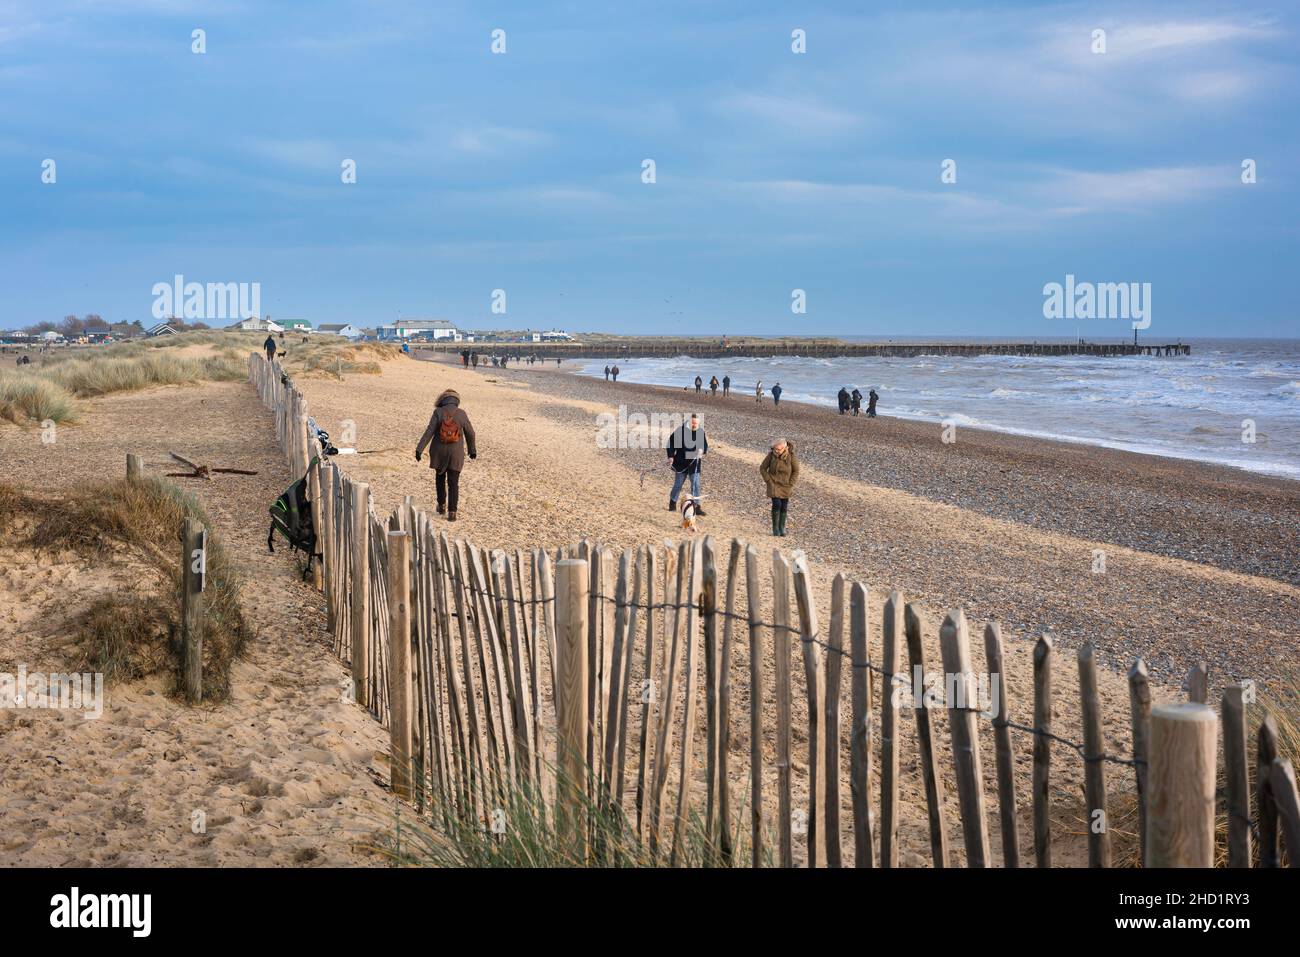 Walberswick beach, out of season view of people walking on the beach at Walberswick, Suffolk coast, England, UK Stock Photo